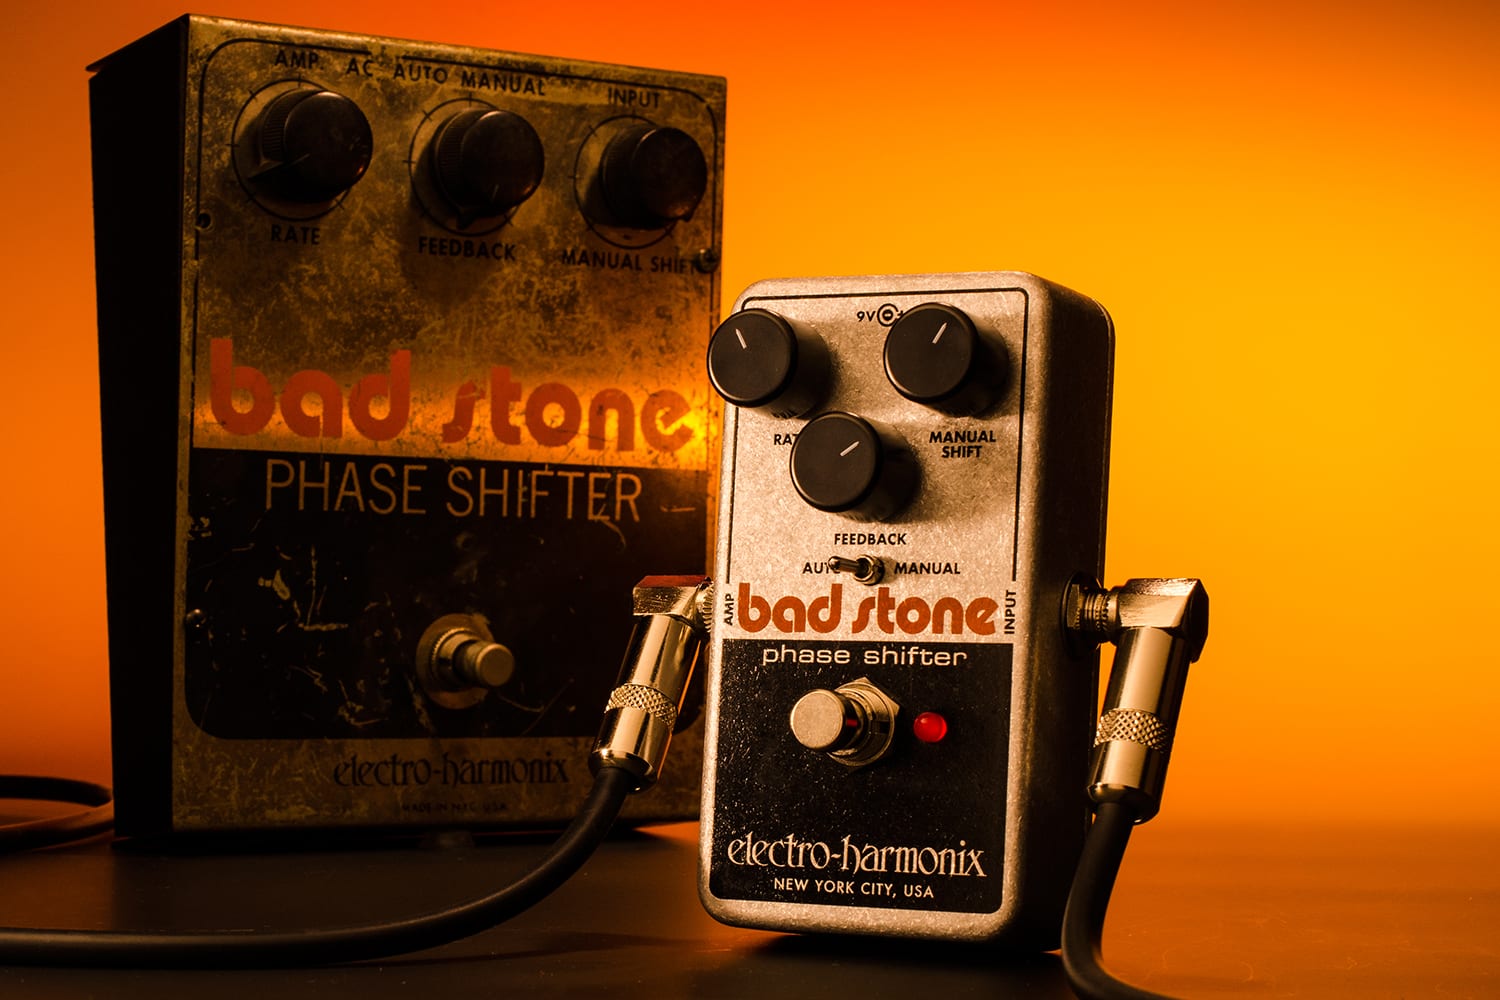 Bad Stone | Phase Shifter - Electro-Harmonix